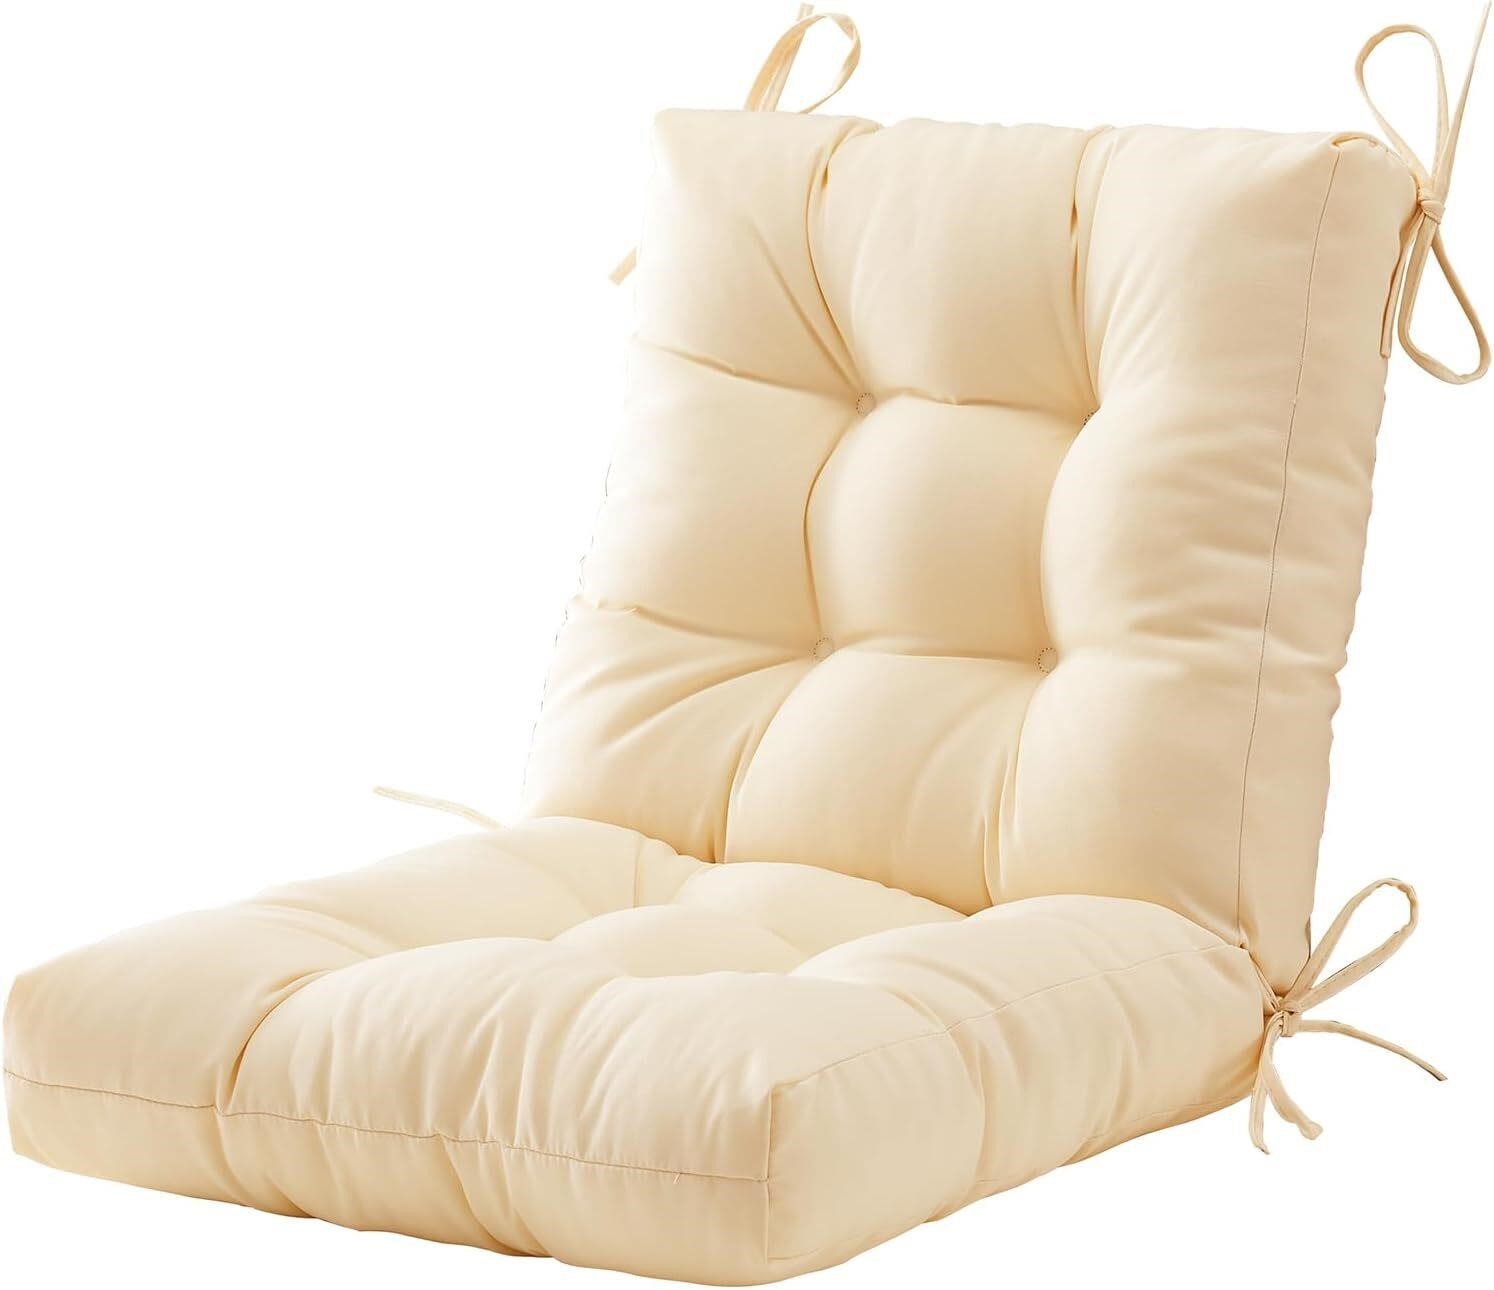 $50  Outdoor Chair Cushions 40x20x4  Beige